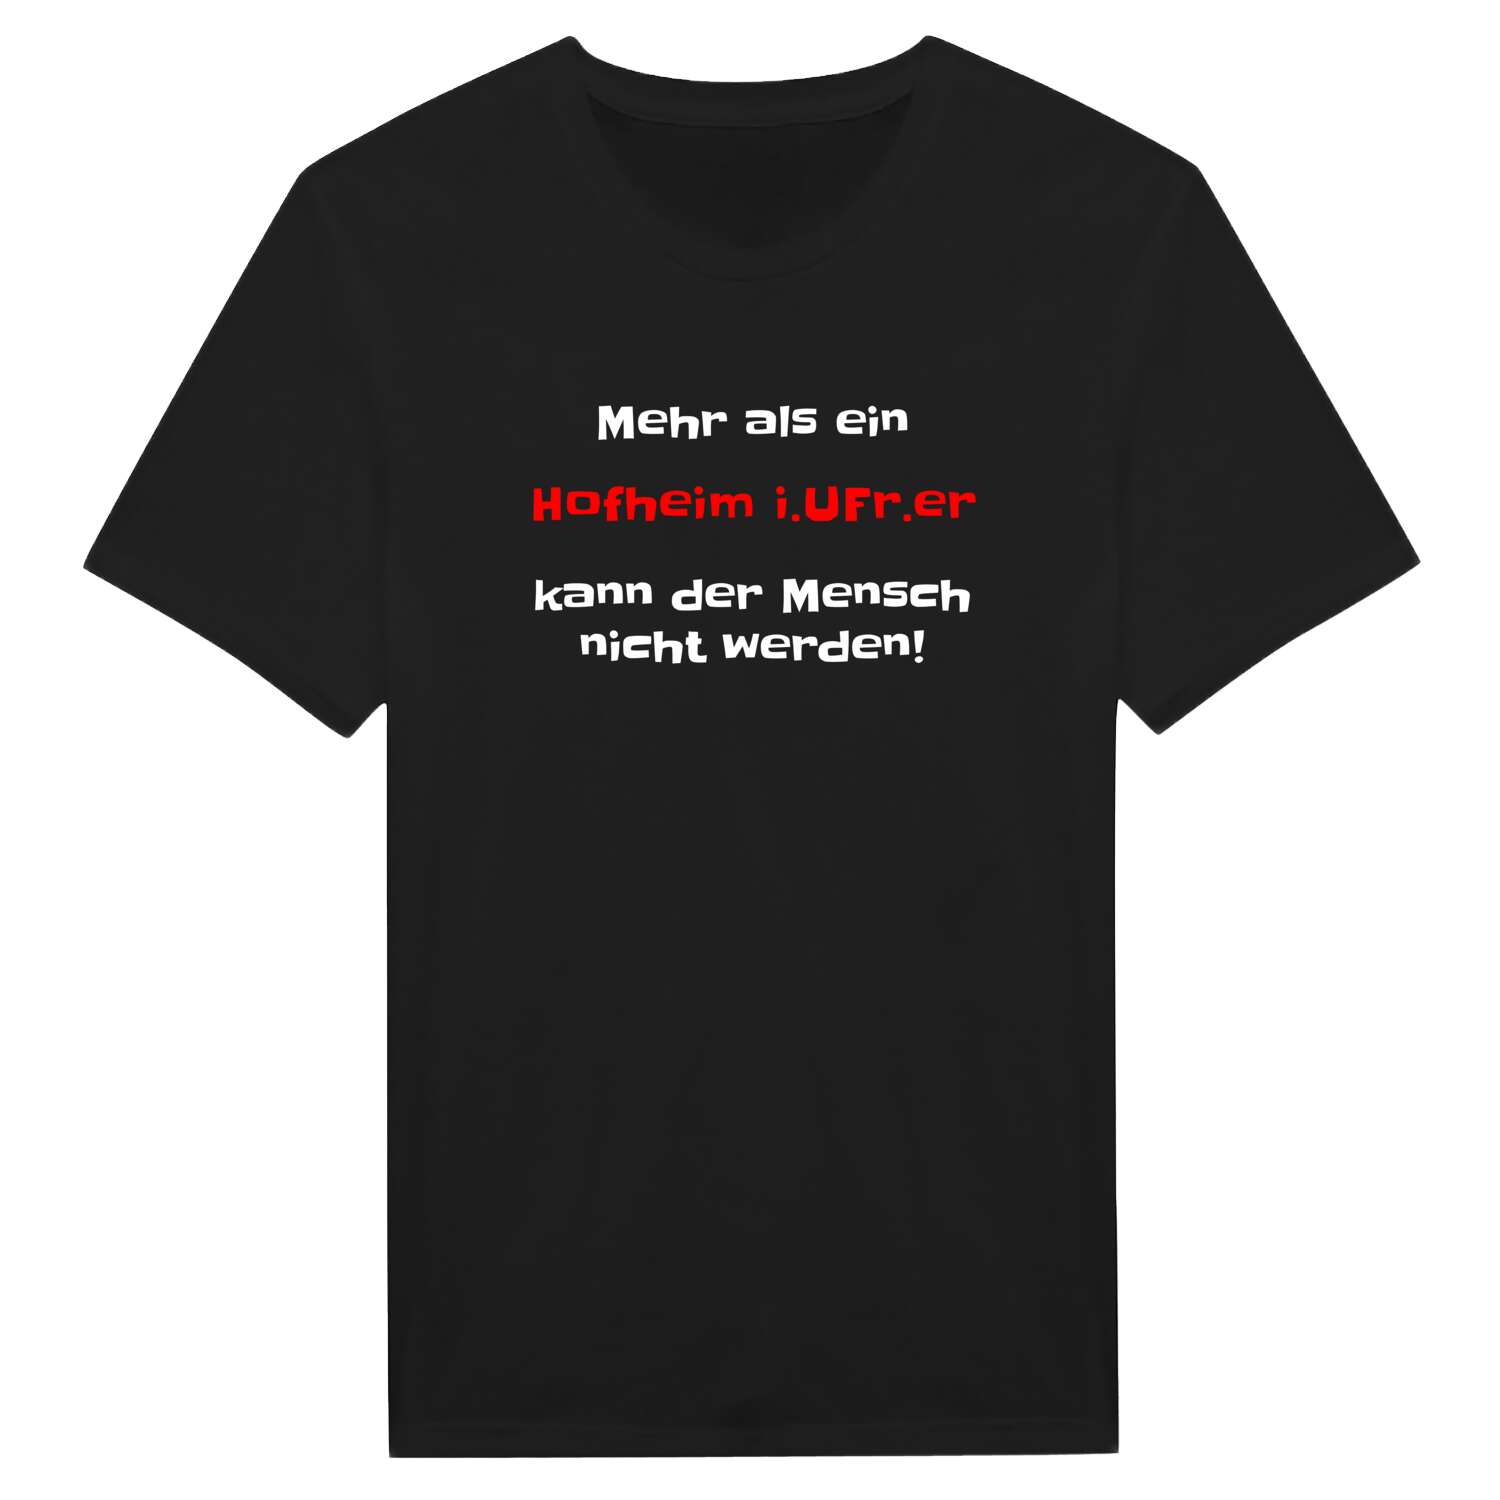 Hofheim i.UFr. T-Shirt »Mehr als ein«